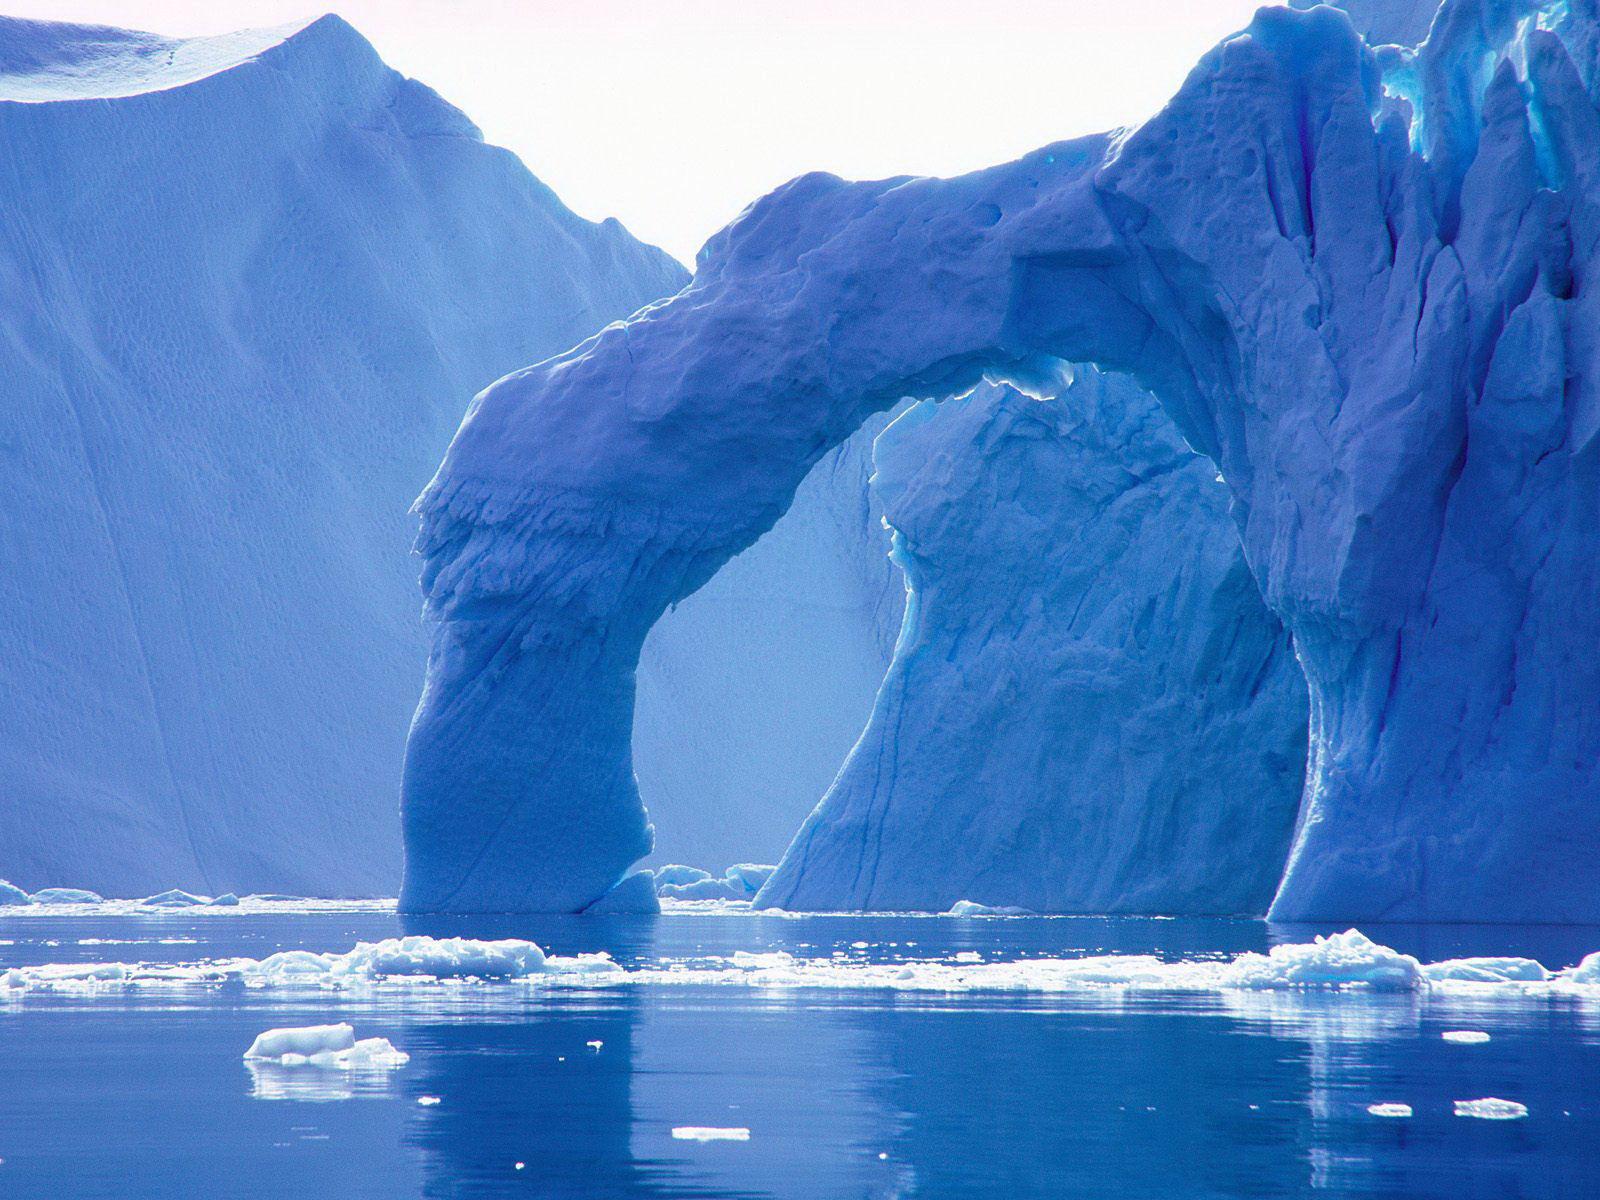 eisberg tapete hd,eisberg,eis,arktischer ozean,arktis,gletscher